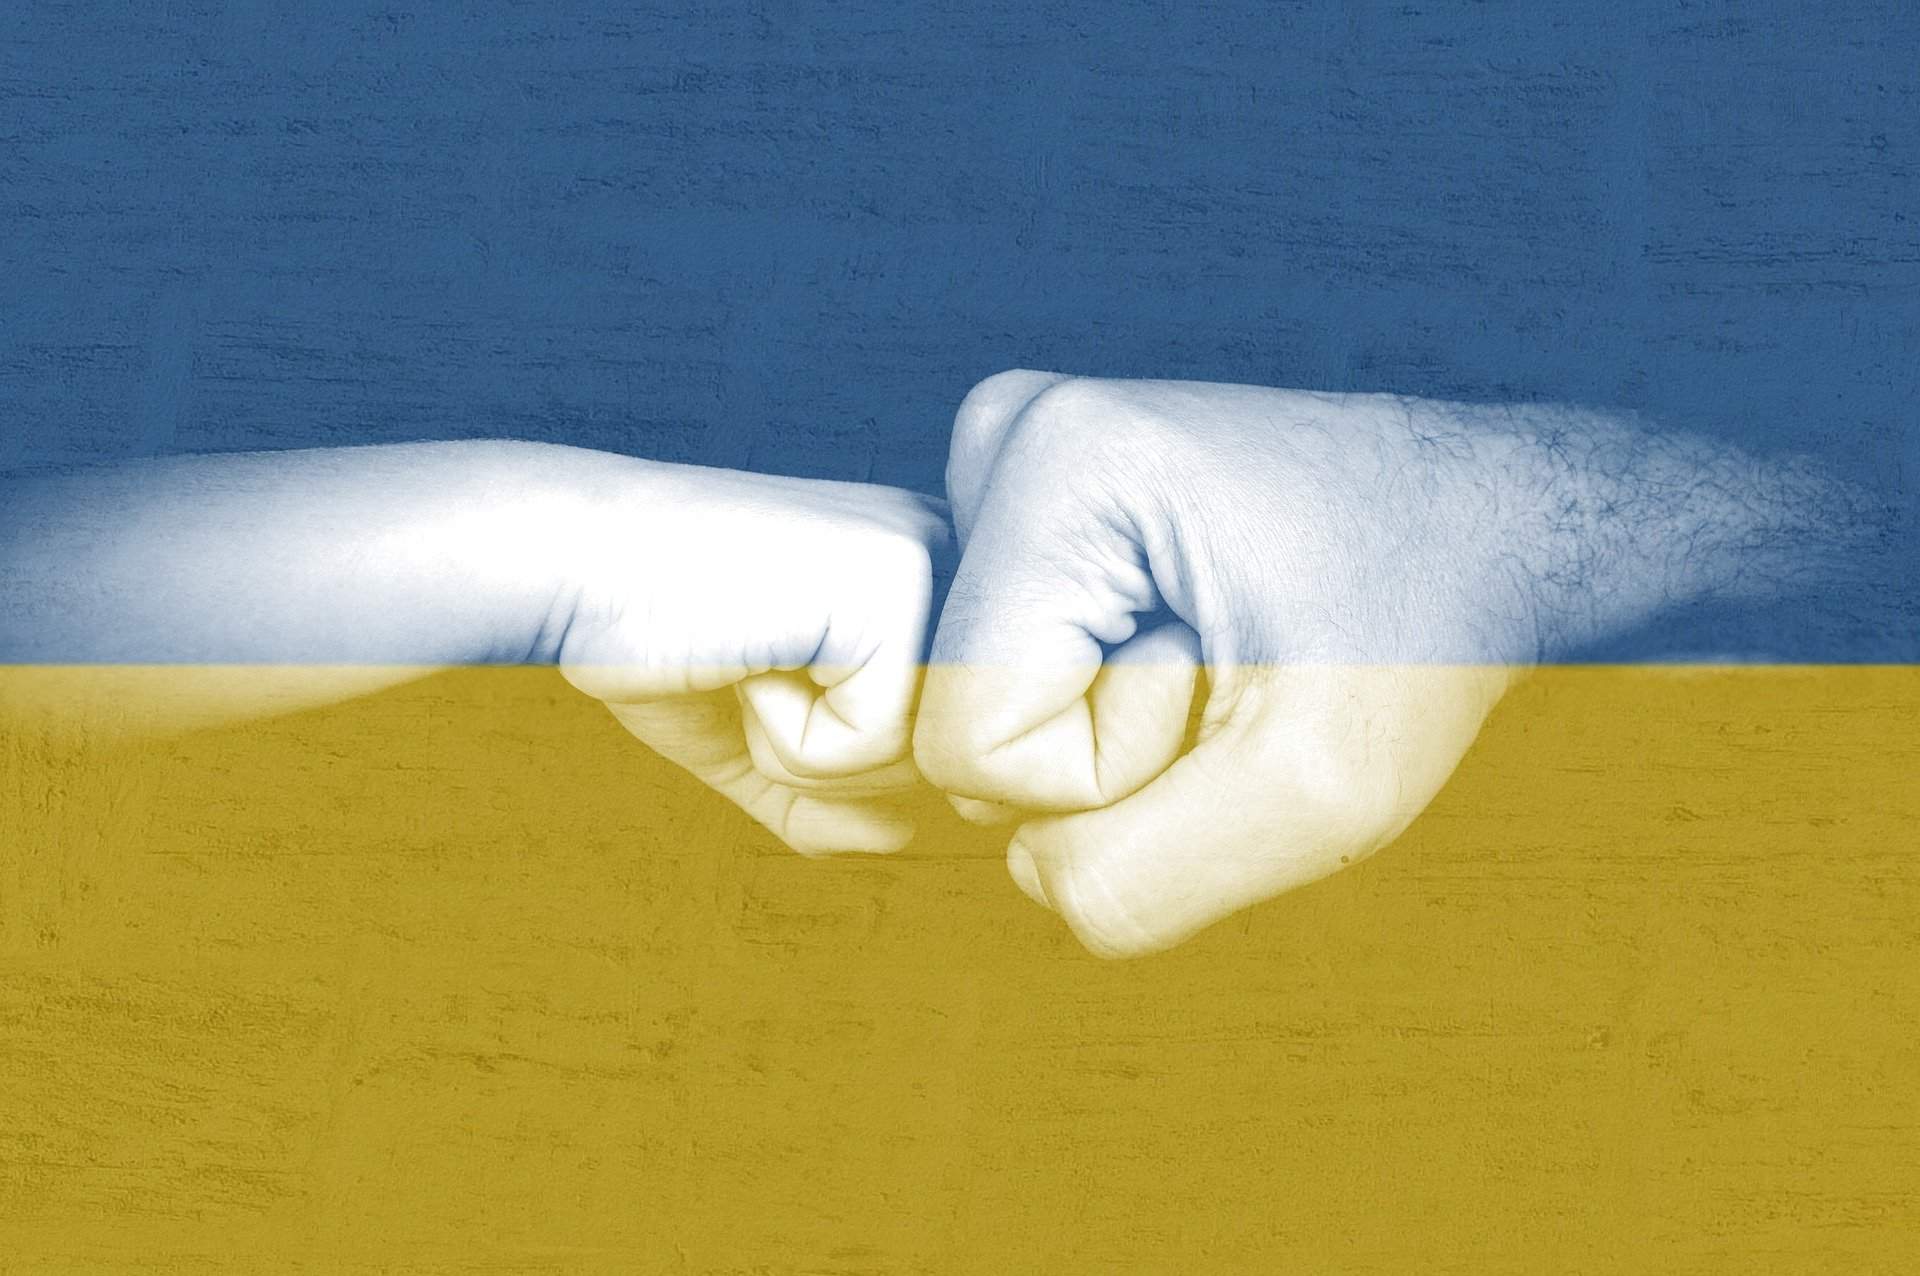 De Brugse Maatwerkbedrijven zijn solidair met Oekraïne. Zowel Kringloopwinkel 't Rad als SOBO zetten acties op touw...